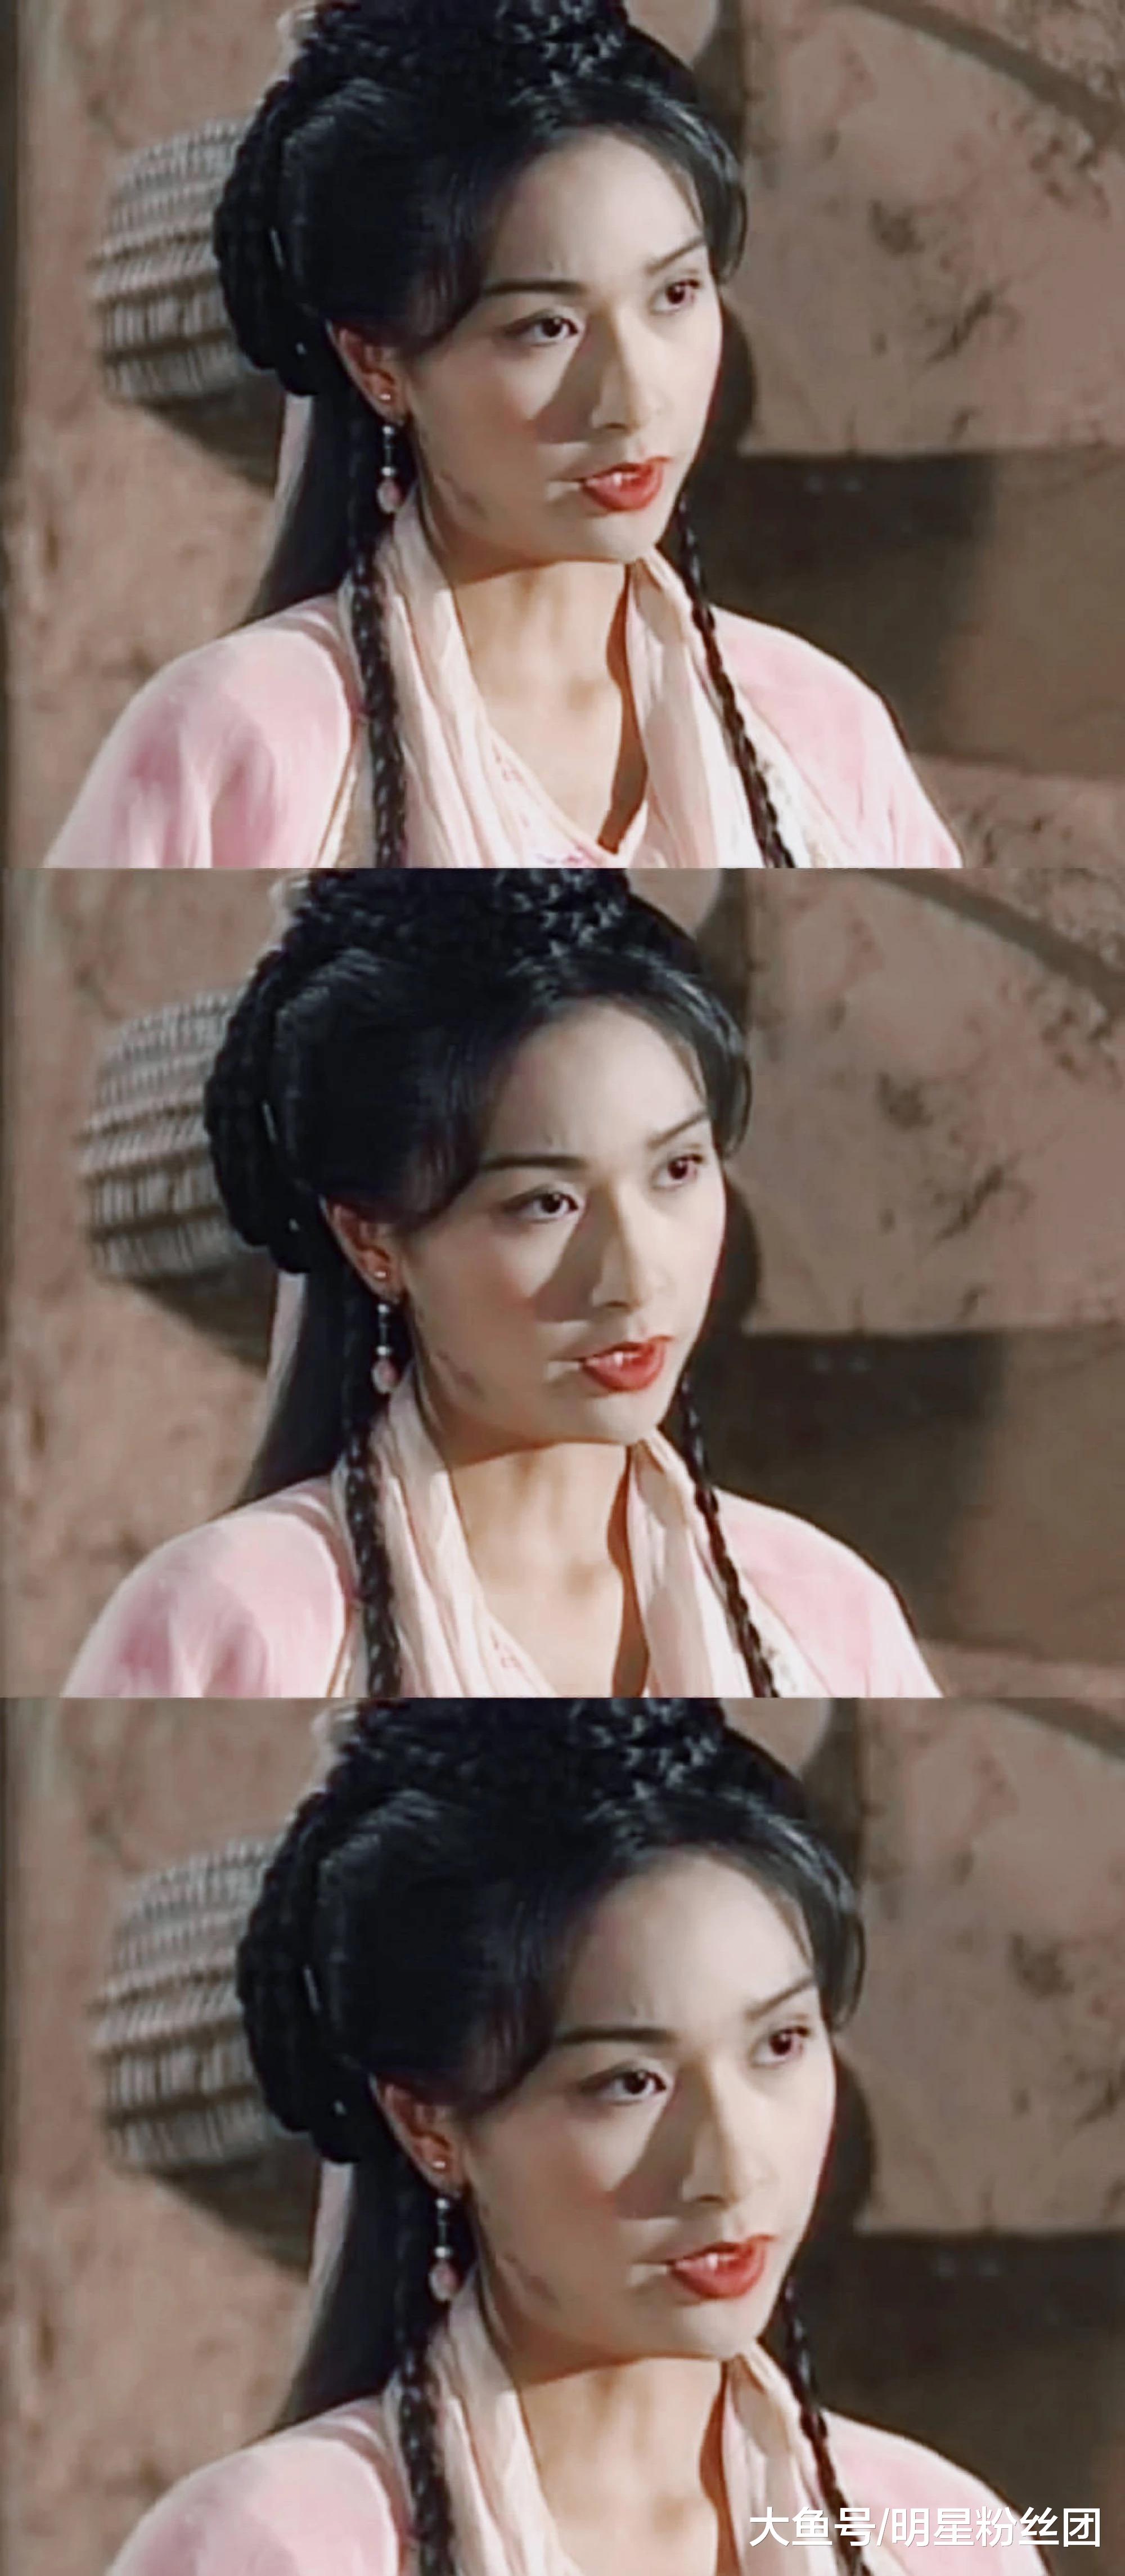 亚洲小姐杨恭如年轻时太美,五官精致如同画中仙女